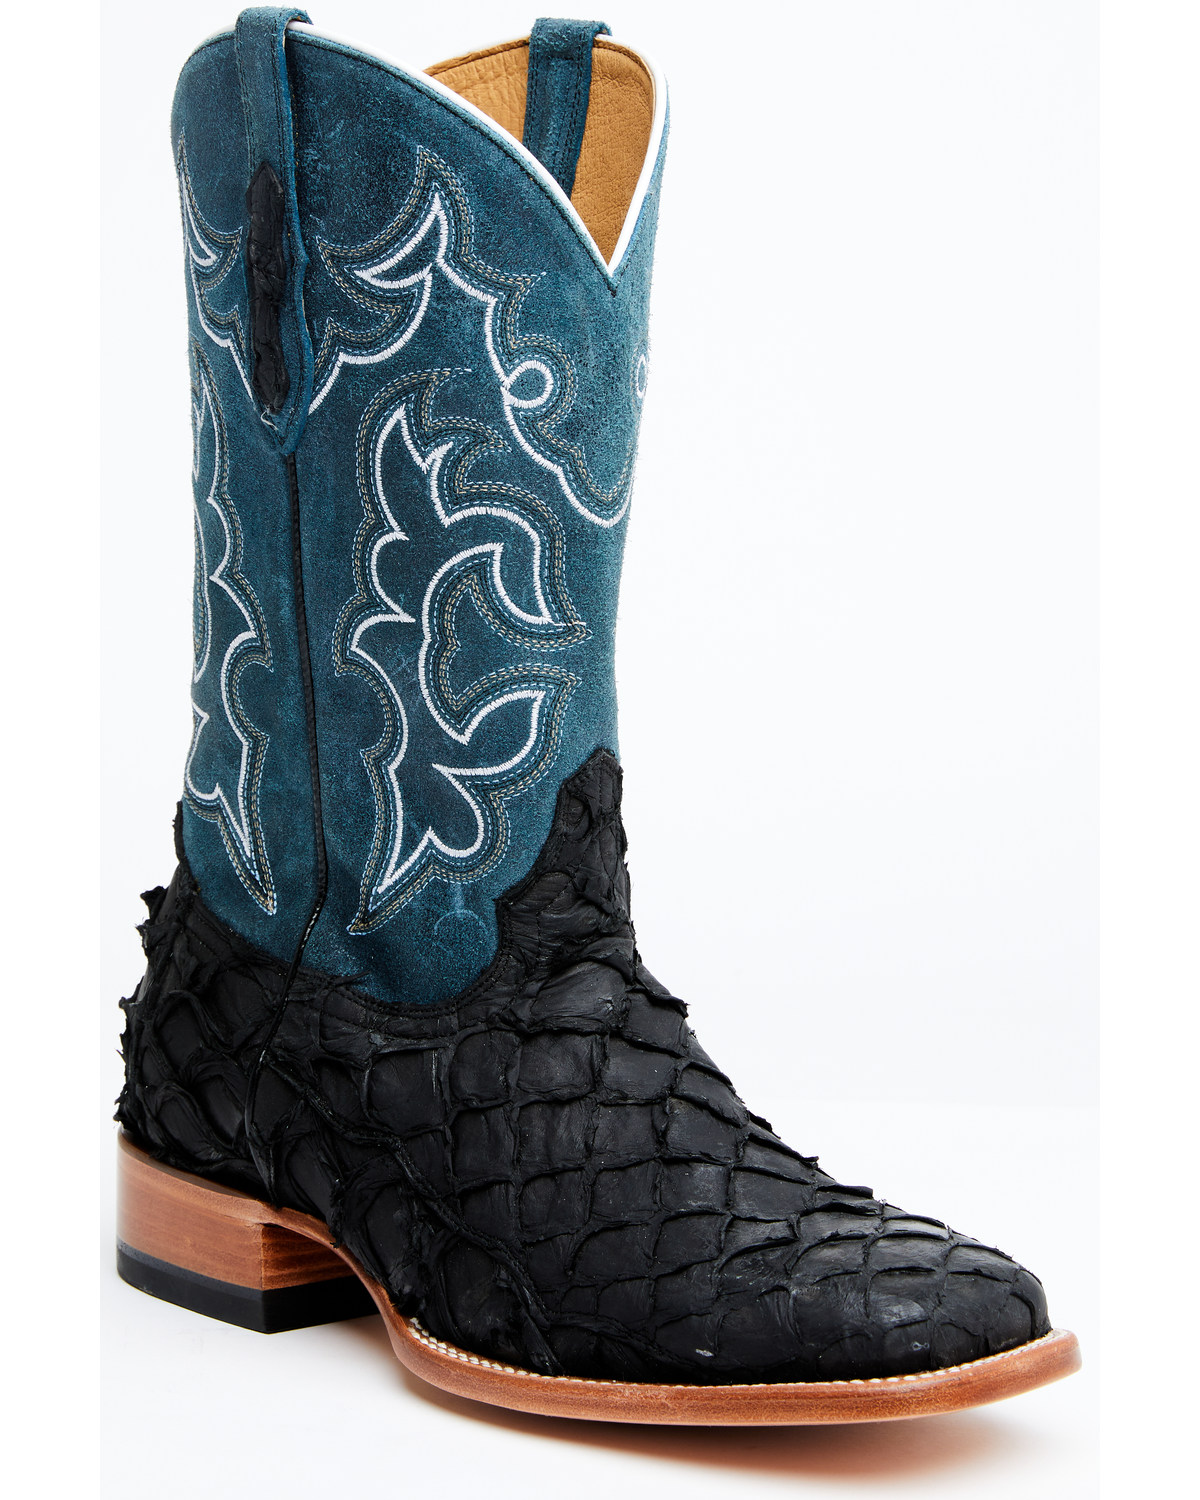 Cody James Men's Pirarucu Soul Western Exotic Boot - Broad Square Toe